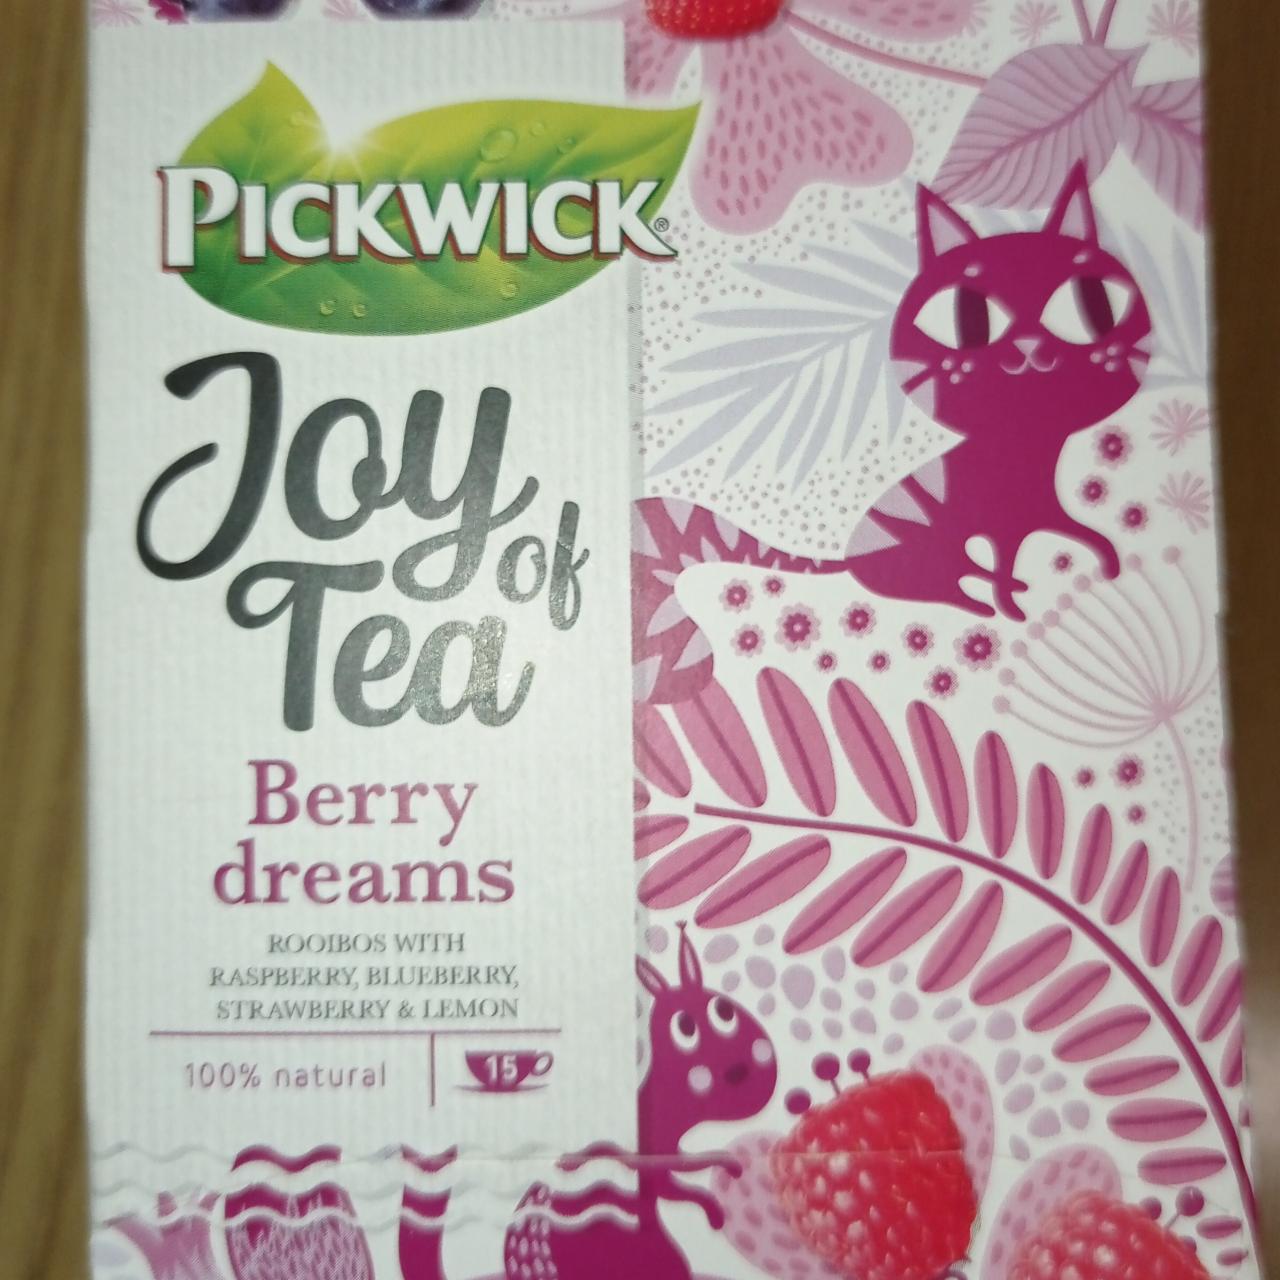 Fotografie - Joy of Tea Berry dreams Pickwick